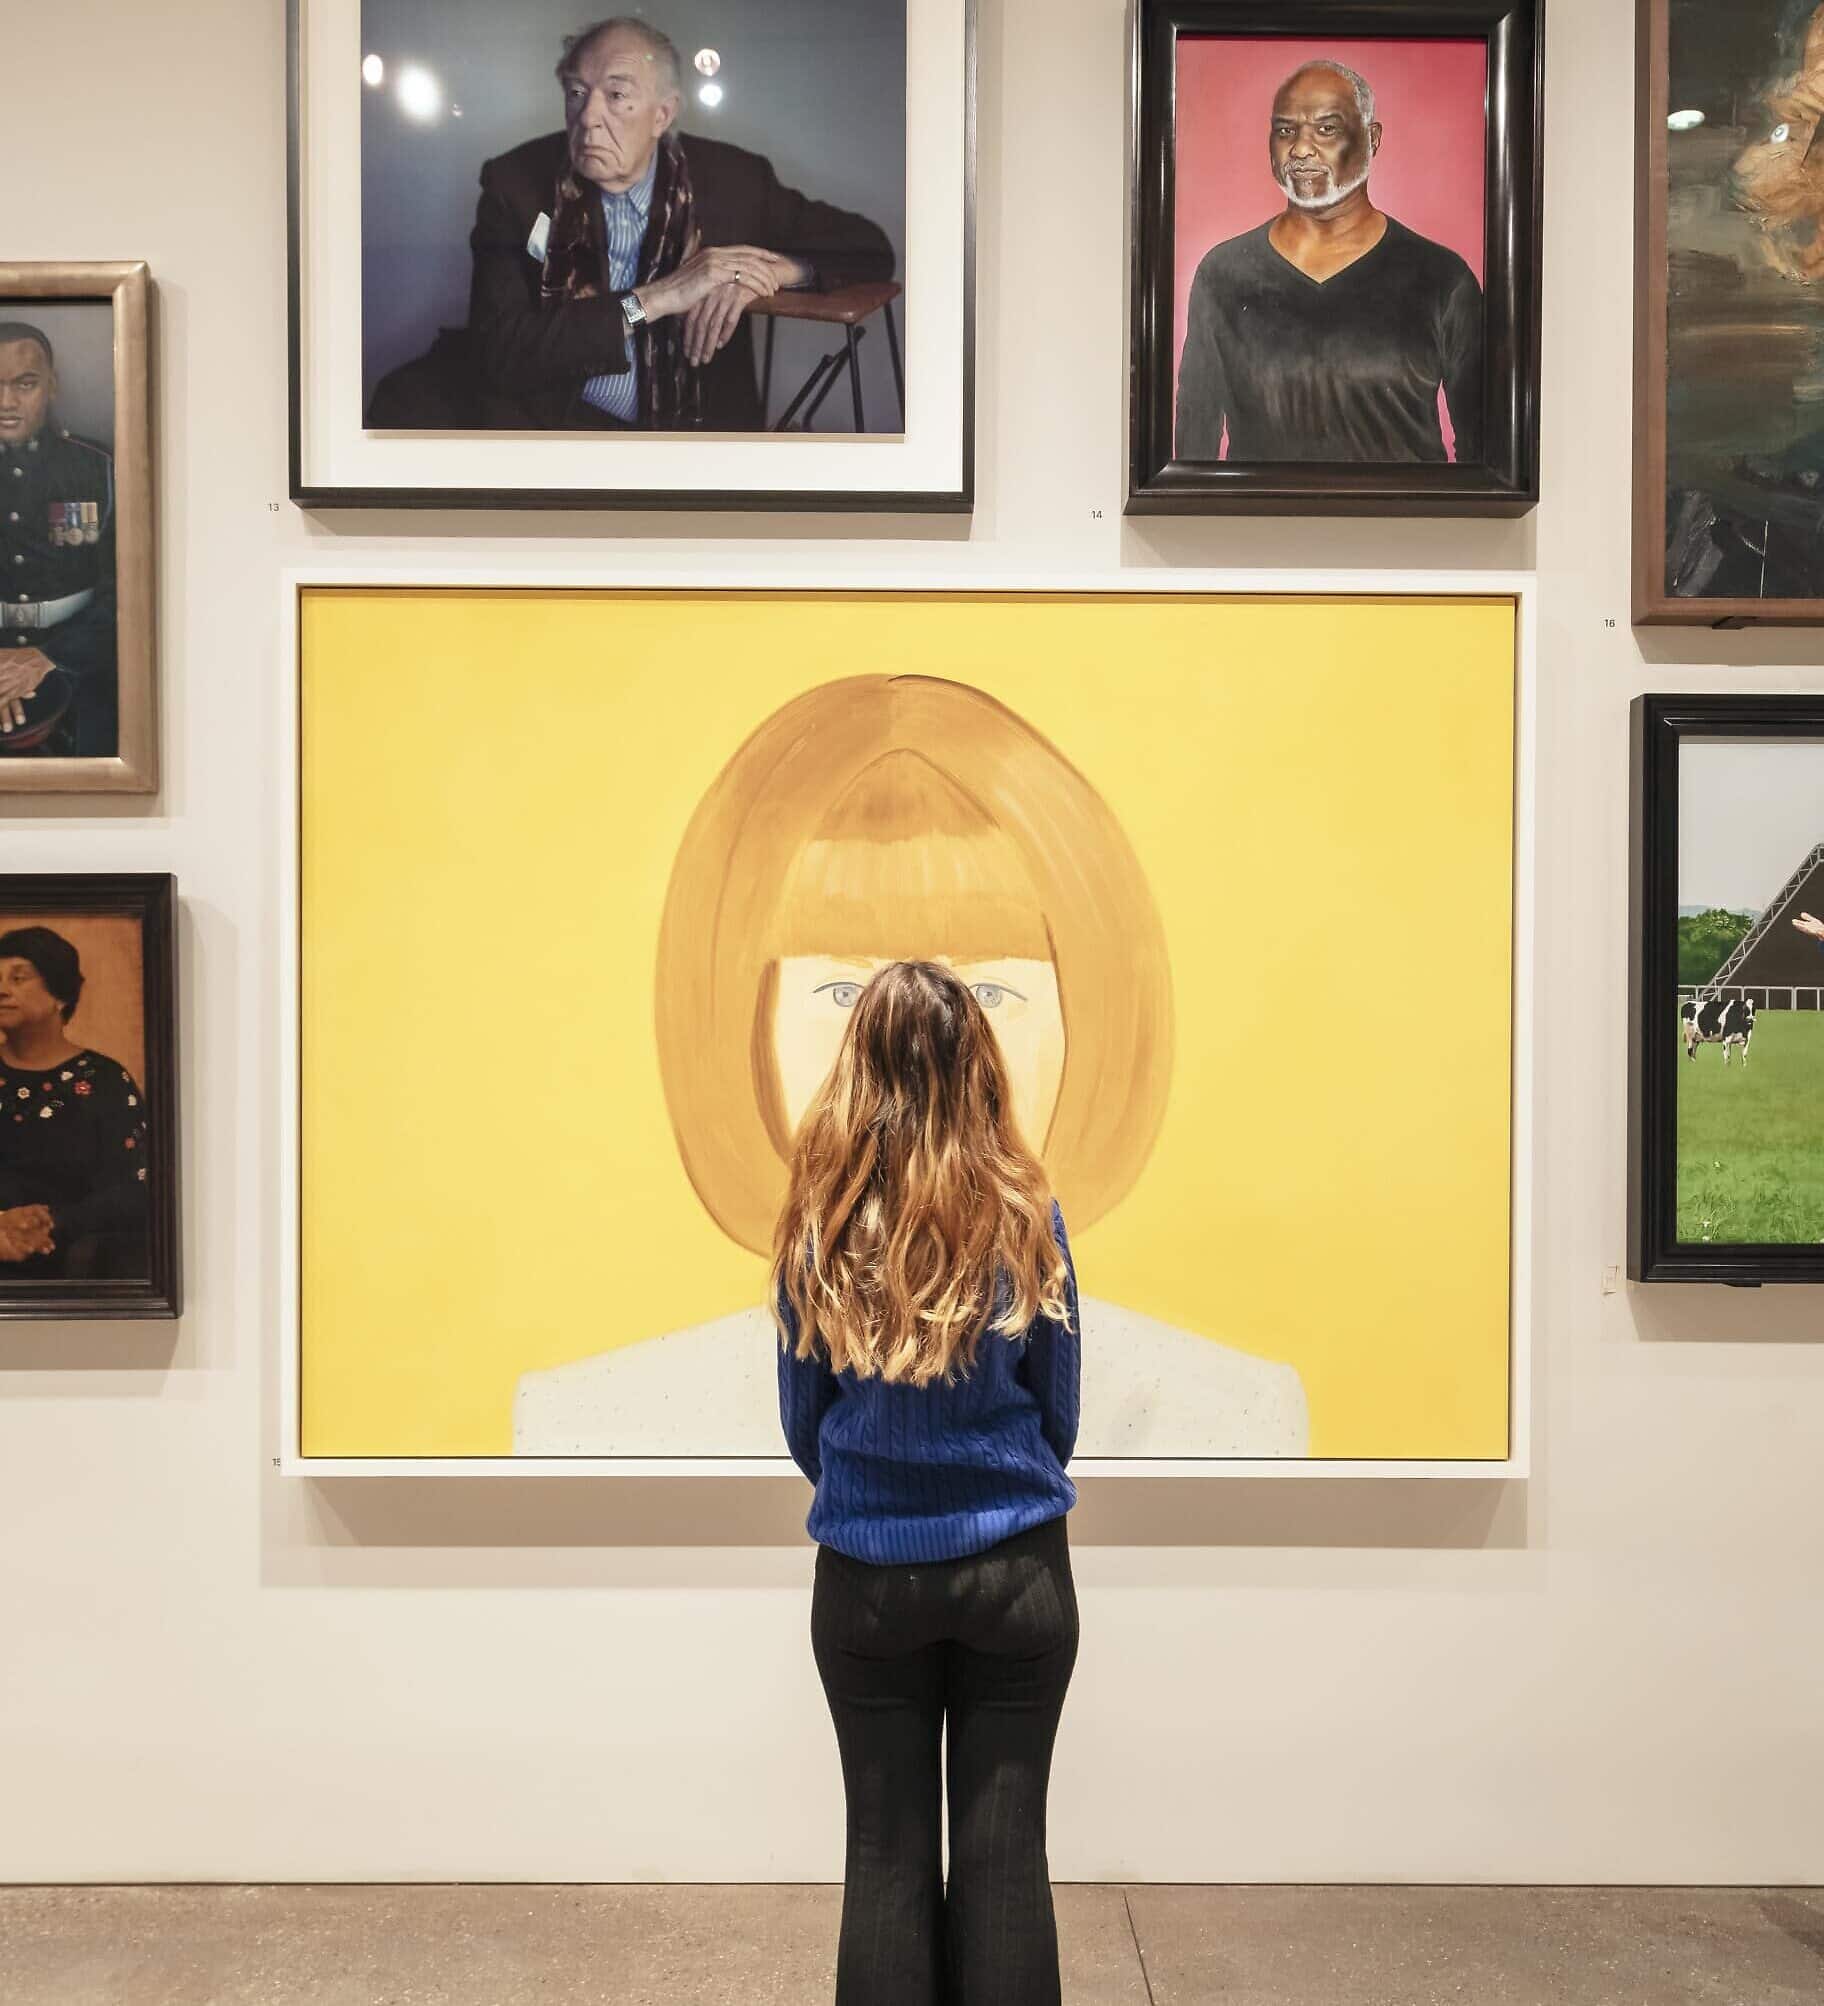 מבקרת בגלריית הדיוקנאות הלאומית צופה בדיוקן של אנה וינטור, עורכת ווג (צילום: Jim Stephenson, באדיבות גלריית הדיוקנאות הלאומית)